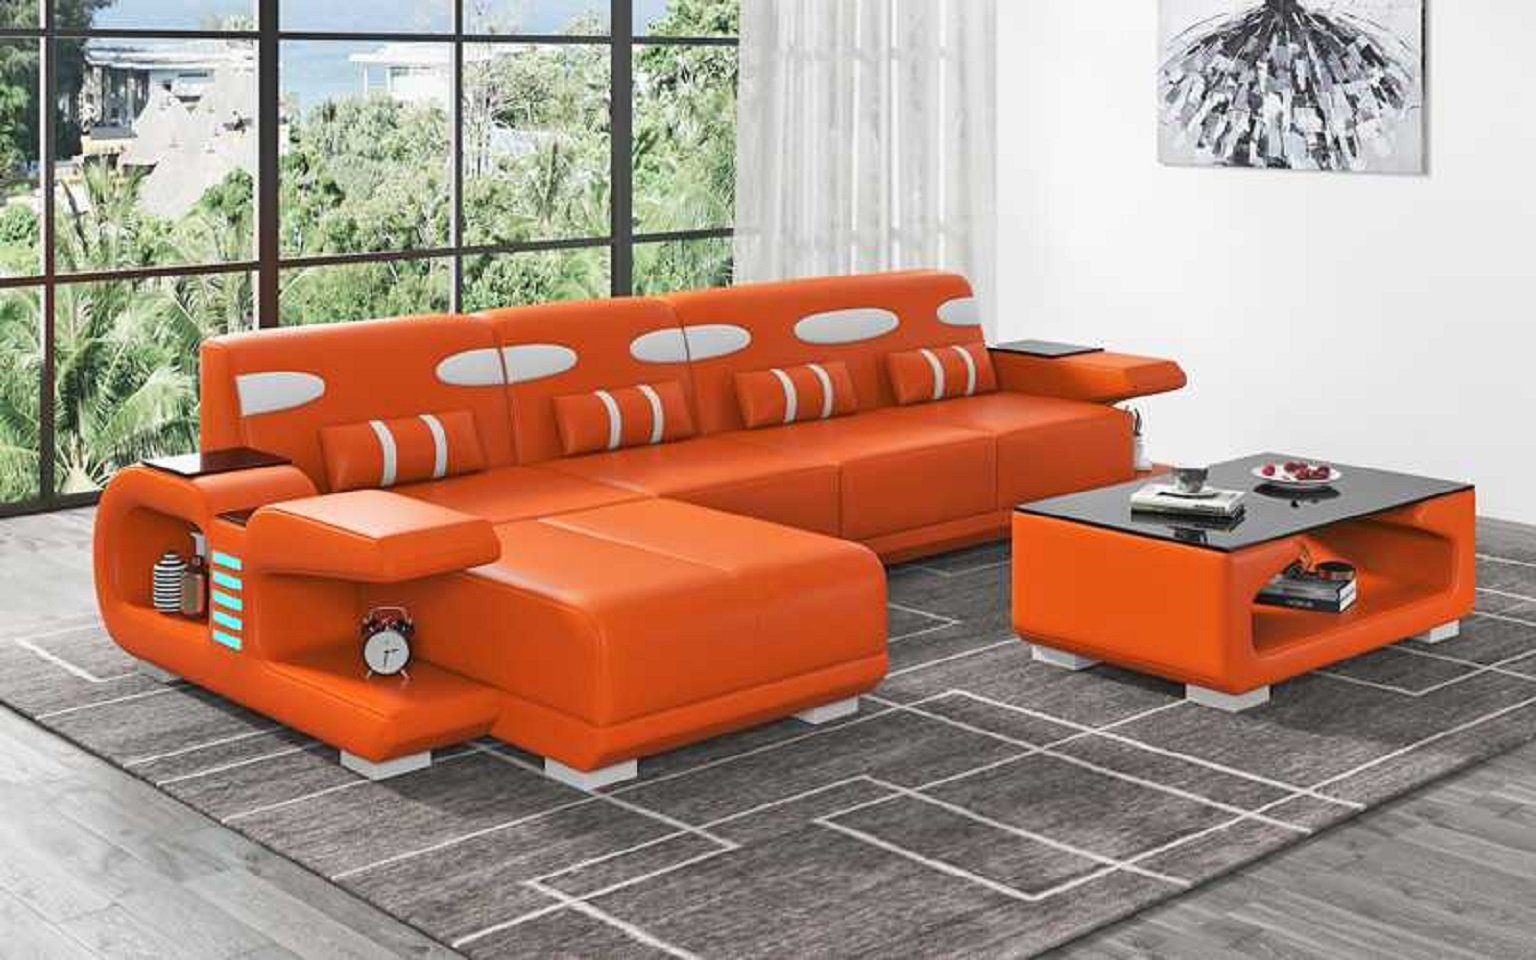 JVmoebel Ecksofa Design Ecksofa L Form Liege Modern Ledersofa Kunstleder Sofa Sofas, 3 Teile, Made in Europe Orange